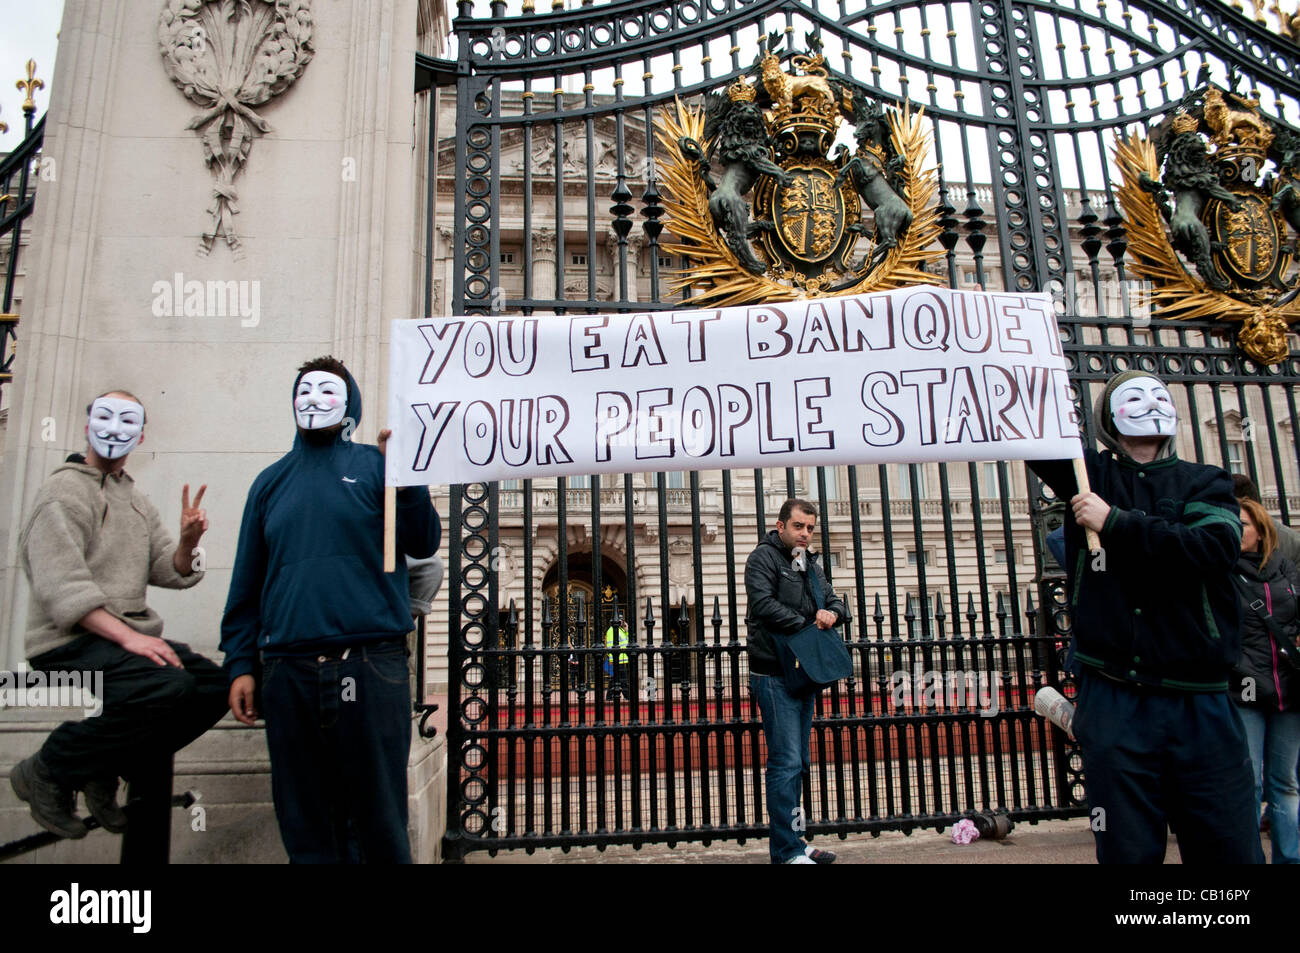 Londra, Regno Unito. 18/05/12. Occupare di Londra e anonimo protestare contro la regina per la decisione di invitare i vari capi di stato di paesi come il Bahrain, dove essi rivendicazione, abusi dei diritti umani e il soffocamento di crescita democratica sono in corso. Foto Stock